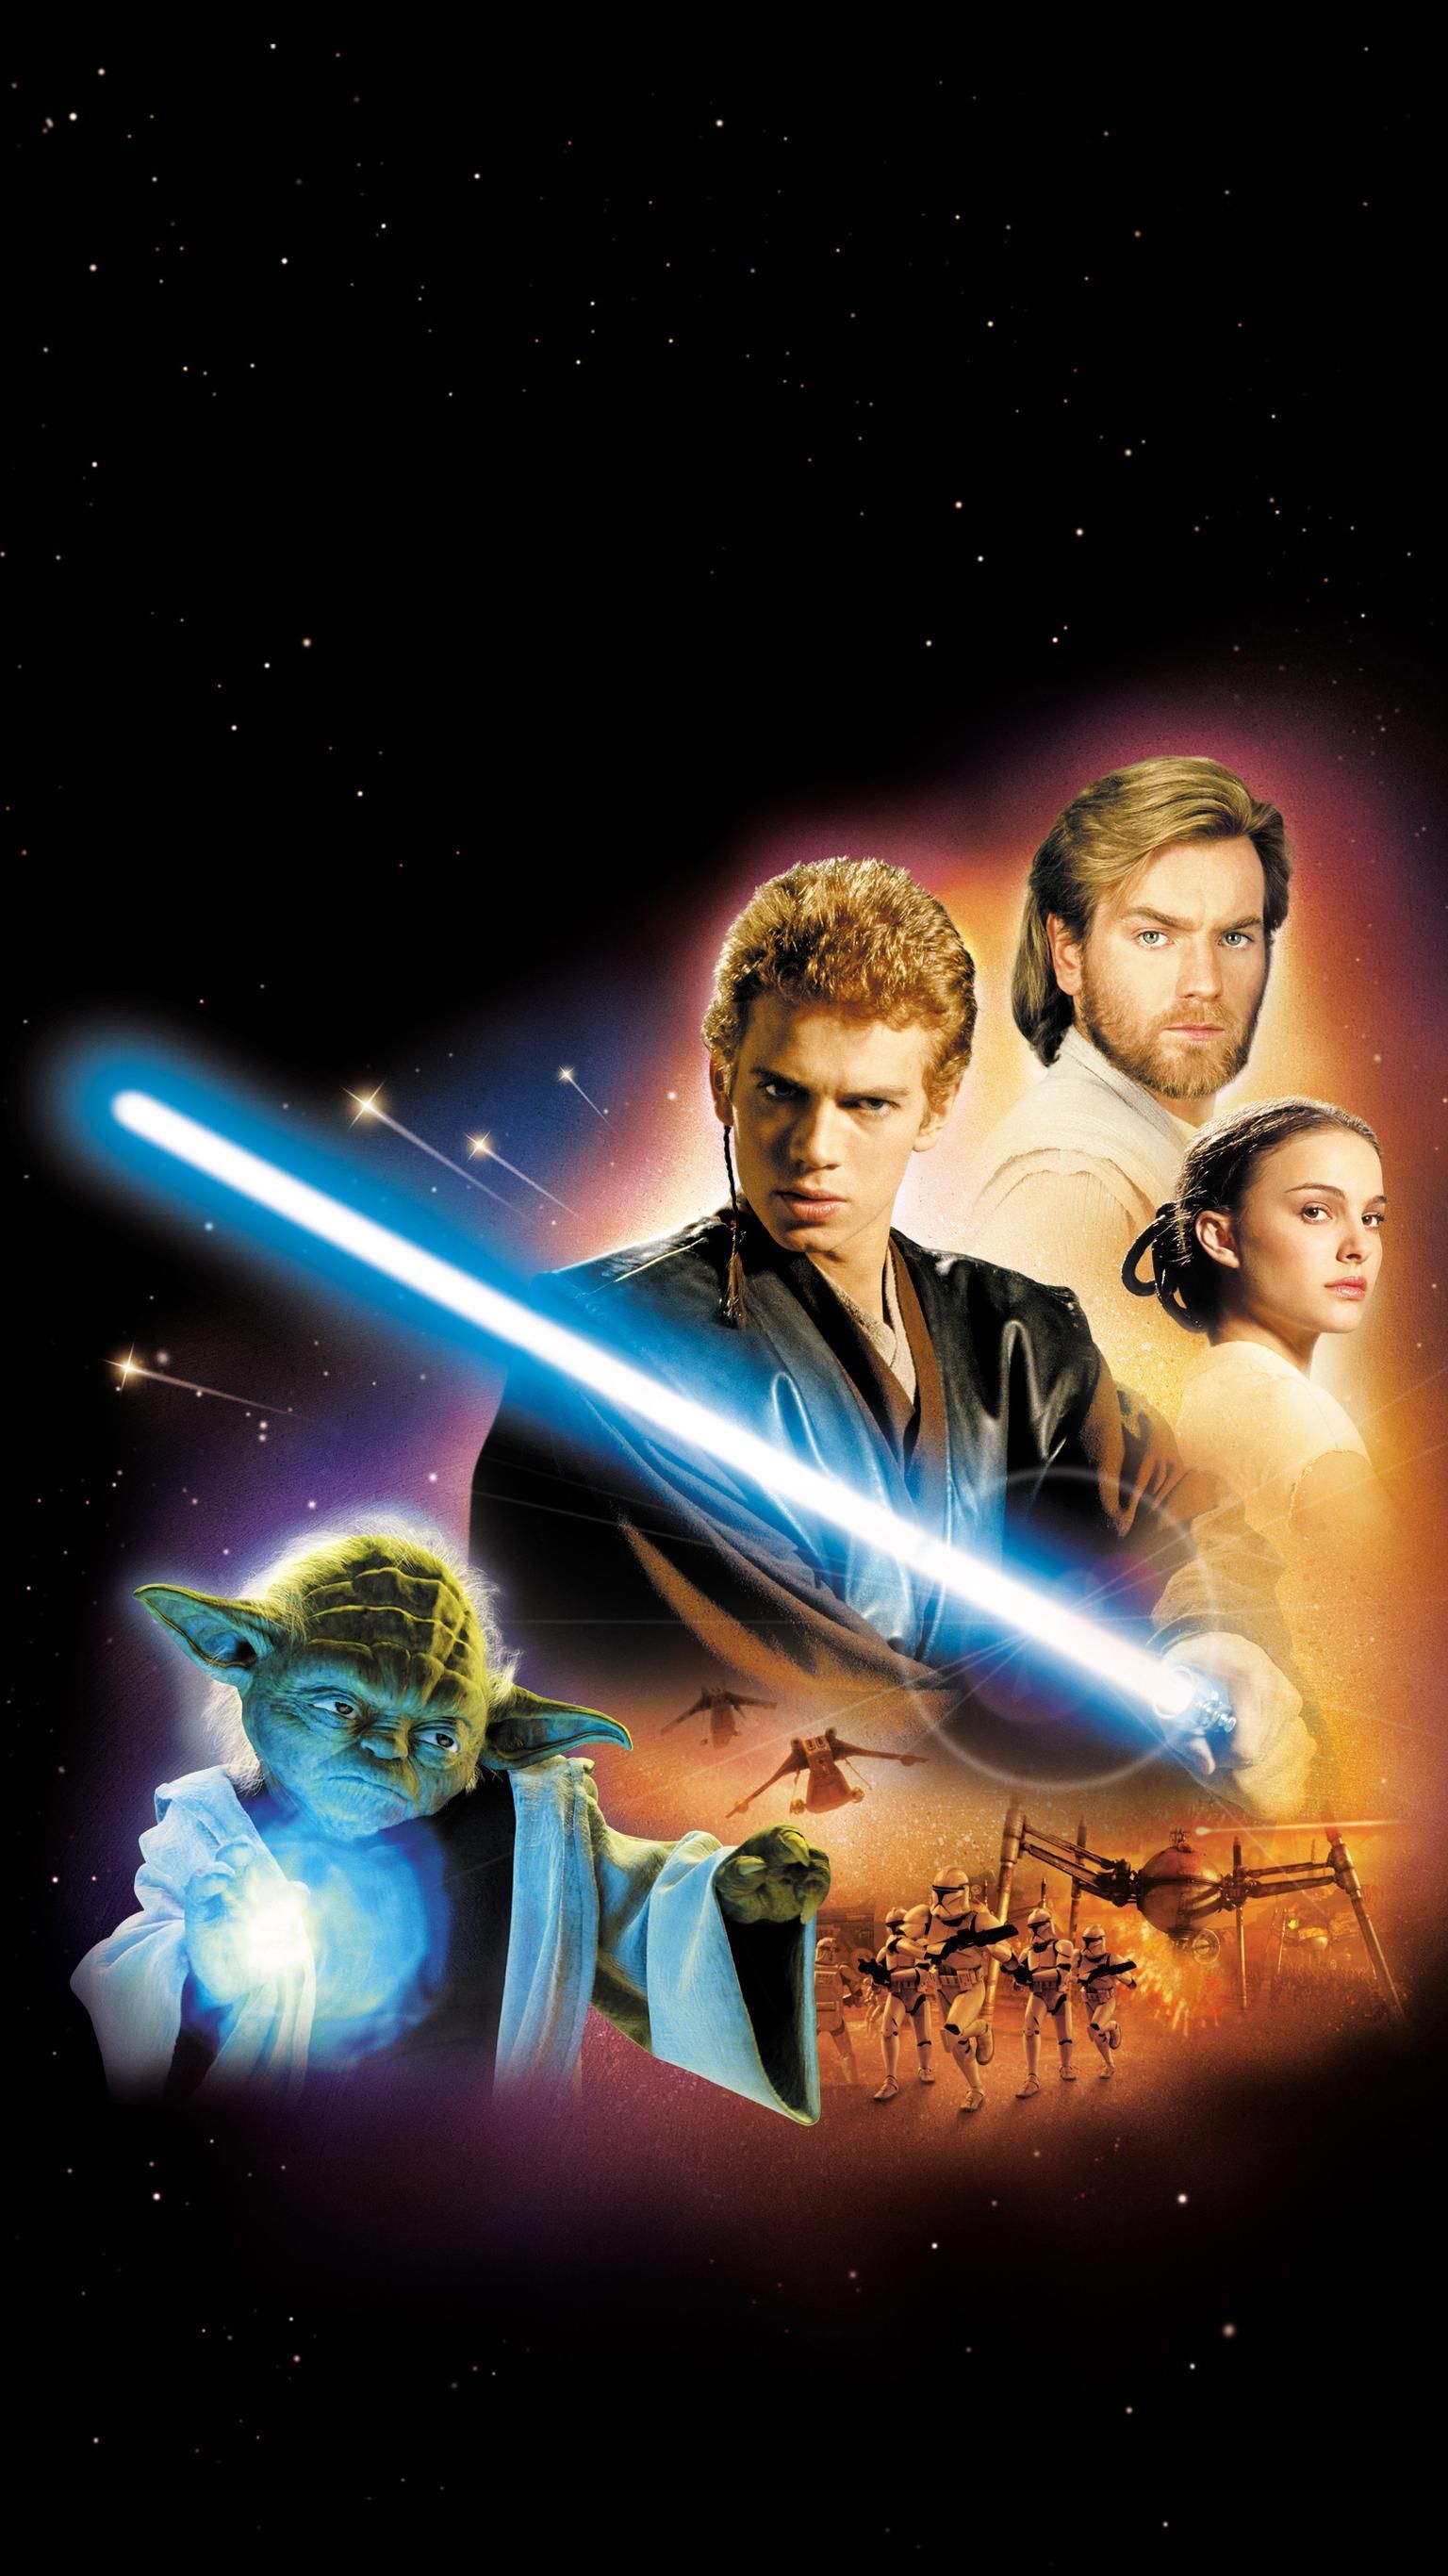 Star Wars: Episode II of the Clones (2002) Phone Wallpaper. Star wars movies posters, Star wars episode Star wars fandom